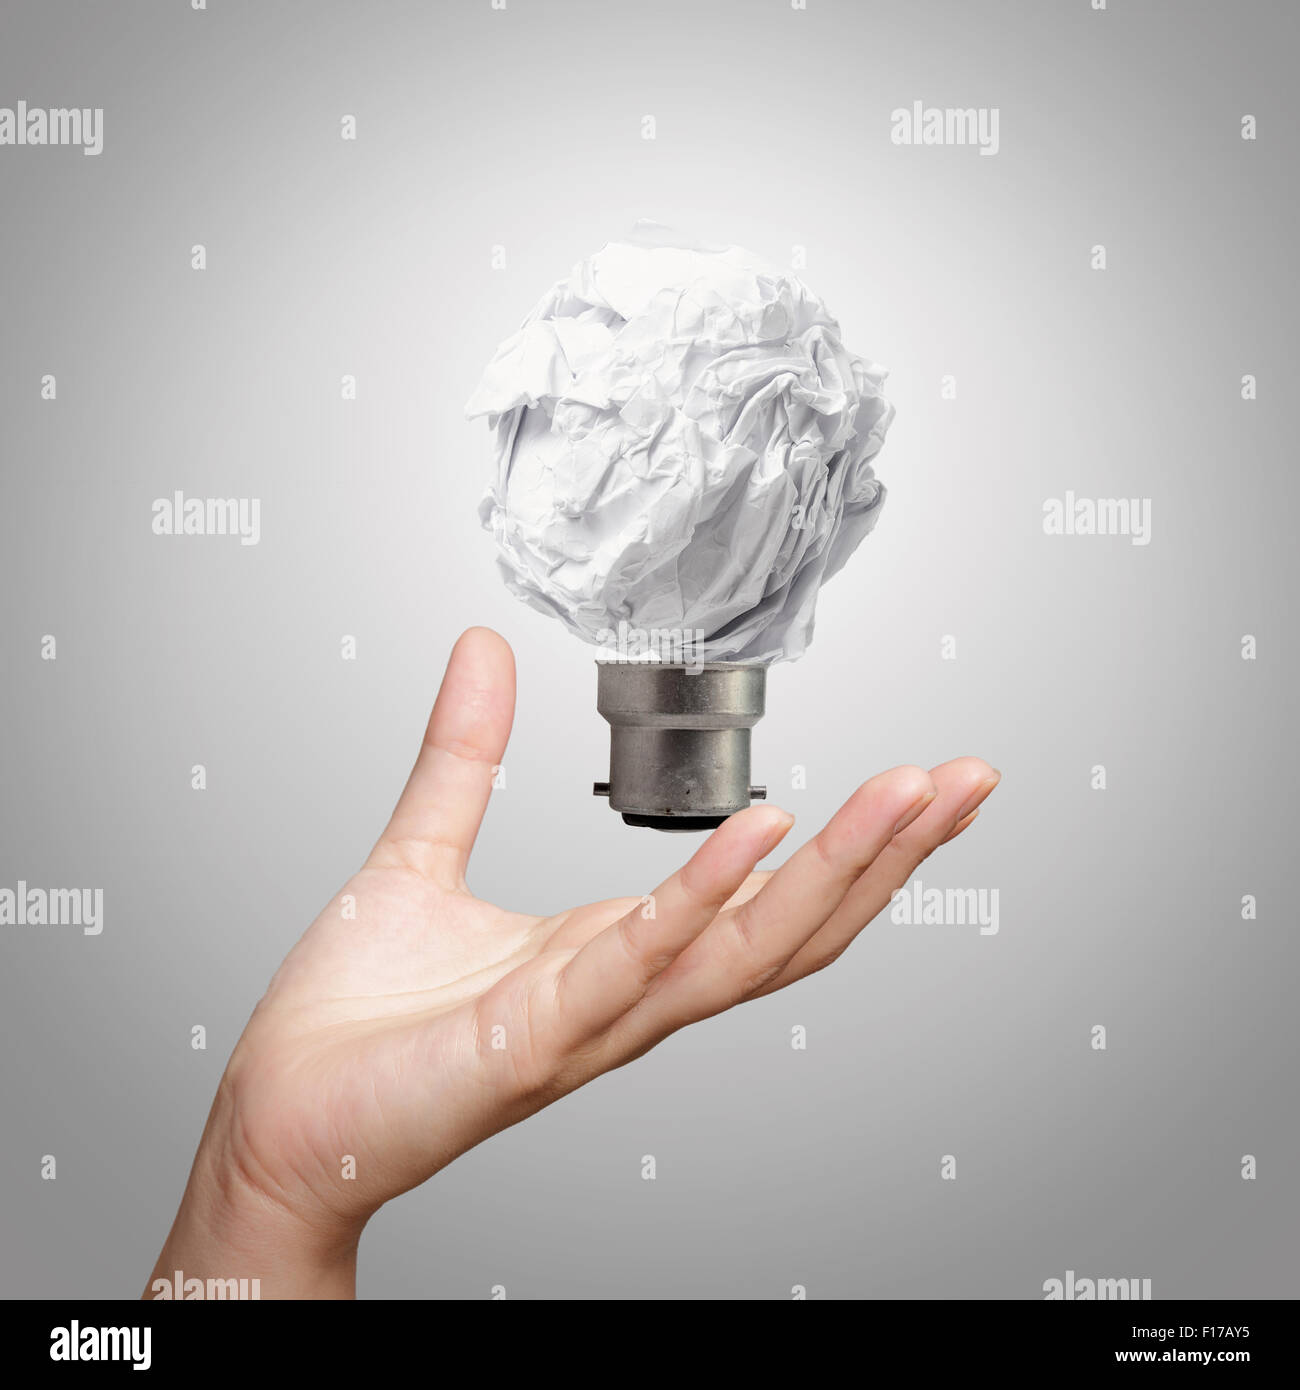 La lampe de la main montrant papier froissé comme concept créatif Banque D'Images